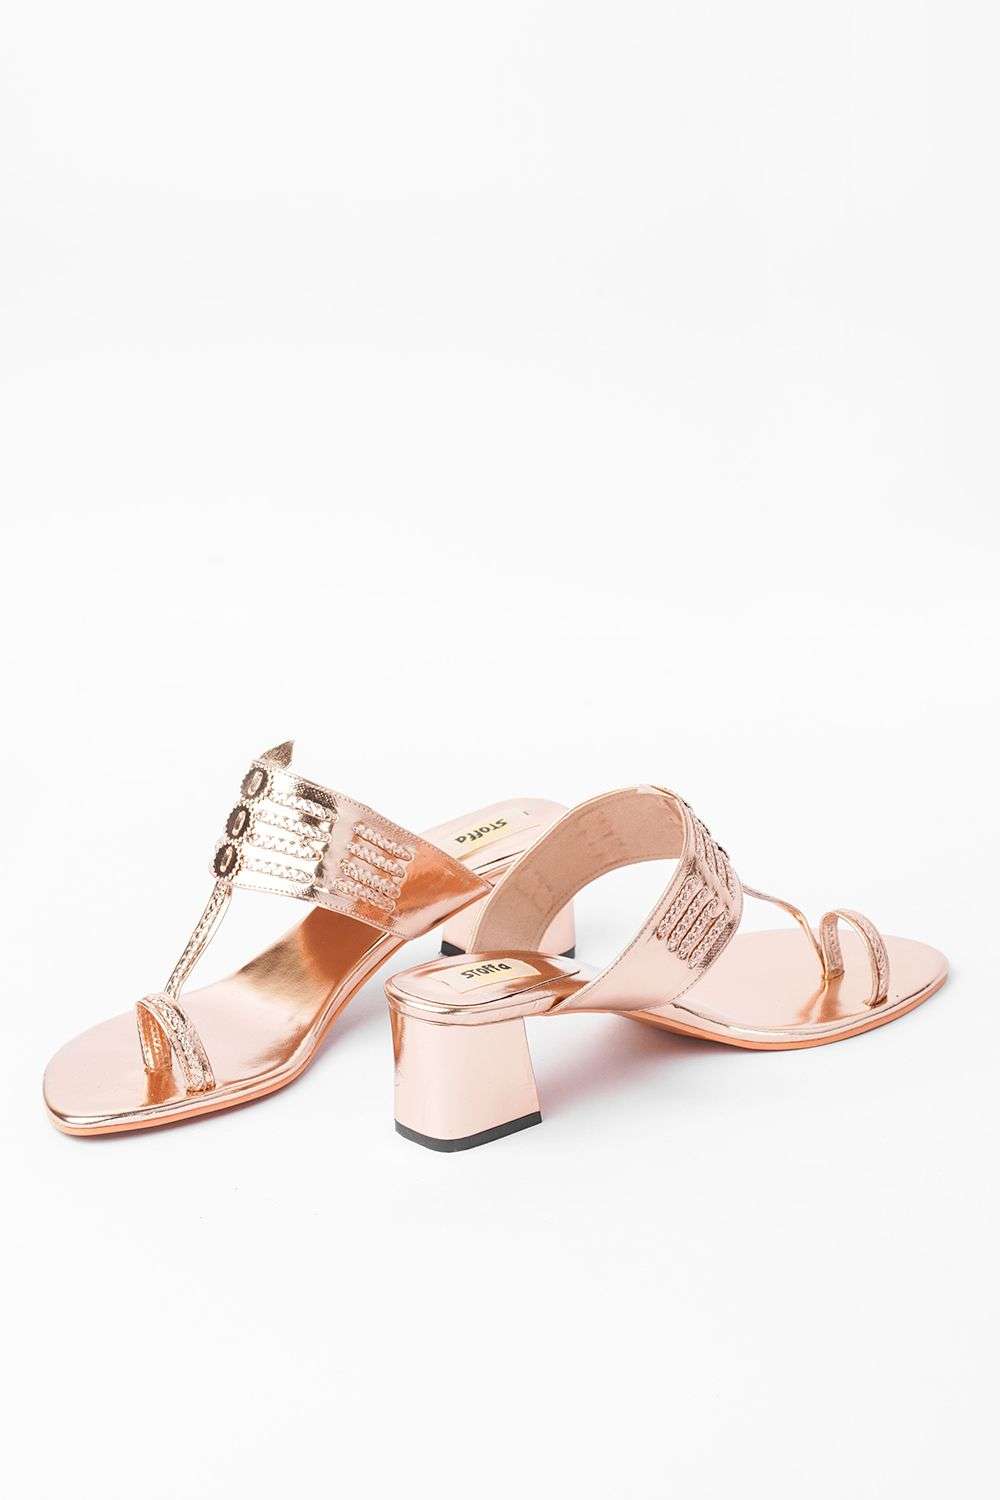 Mango Metallic Heel Sandals in Brown | Lyst